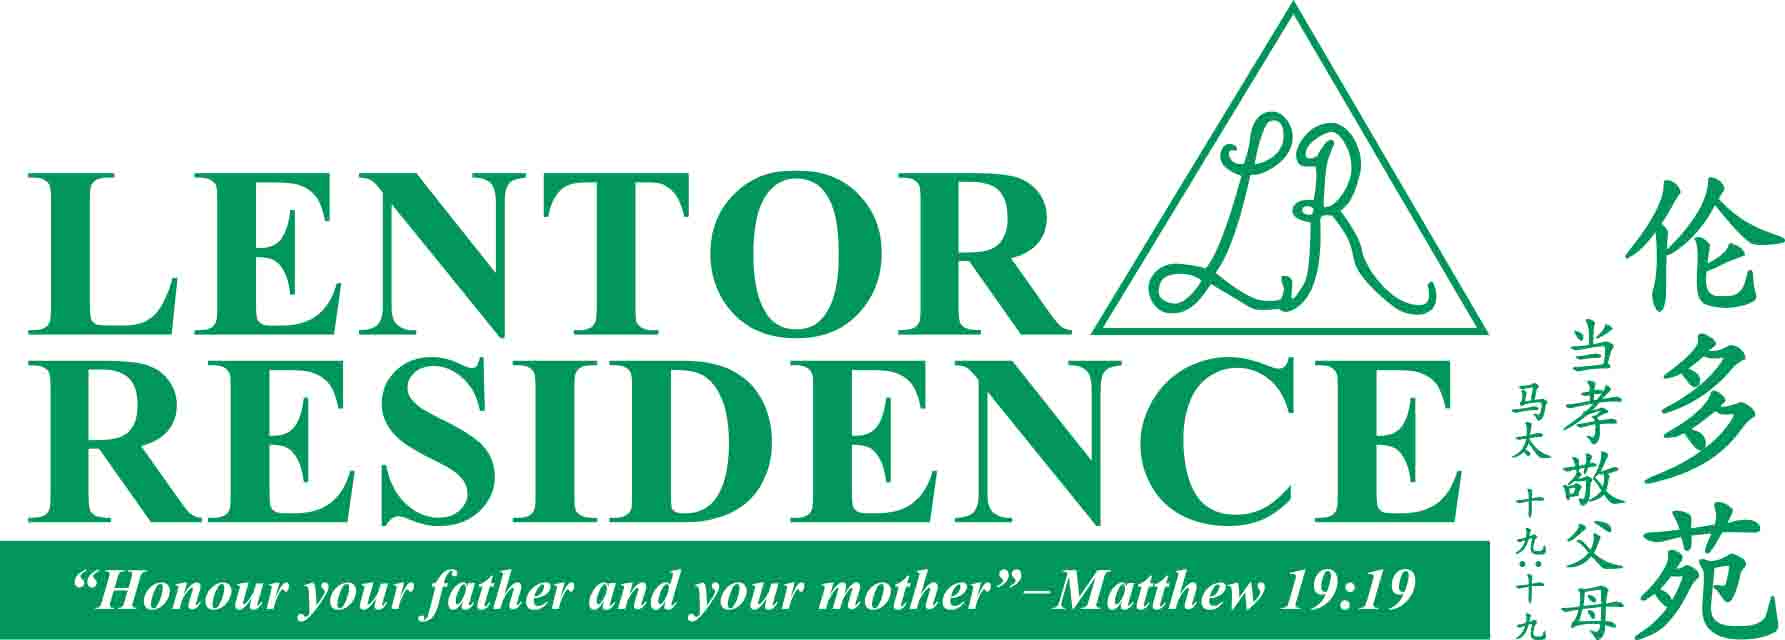 The Lentor Residence Pte Ltd company logo